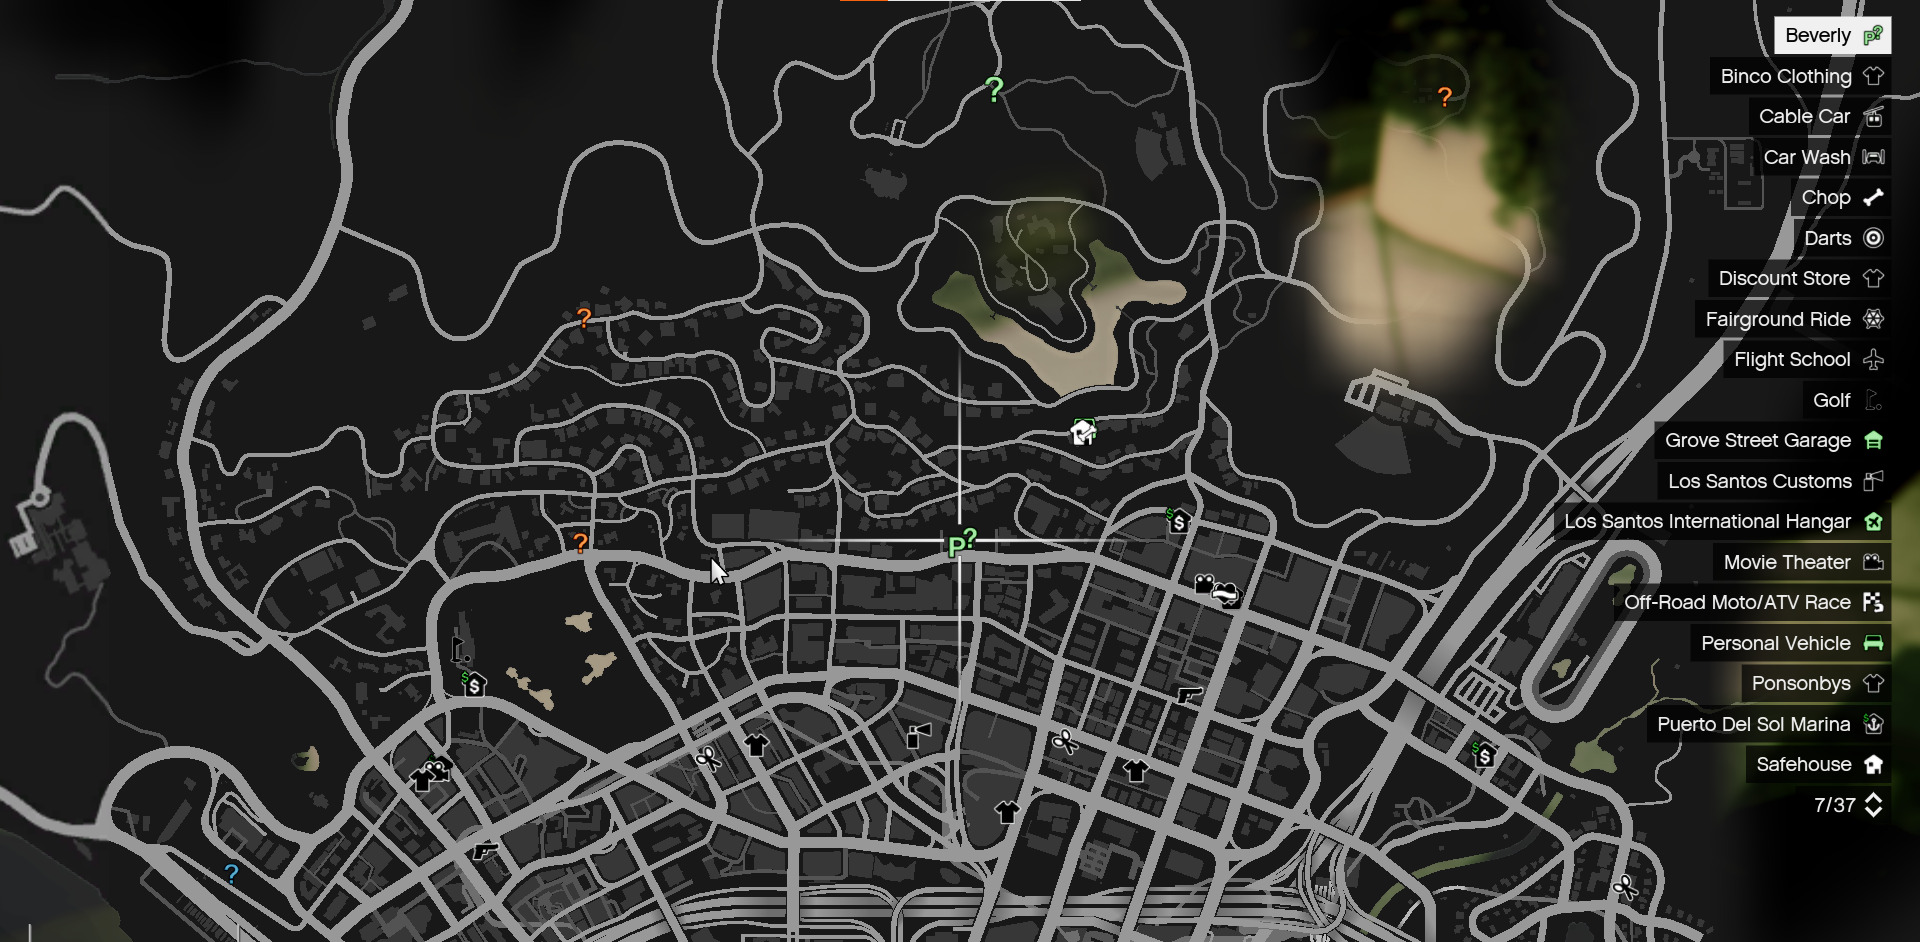 Go to the F, M, or T icons on the map to get the next mission in GTA V. 